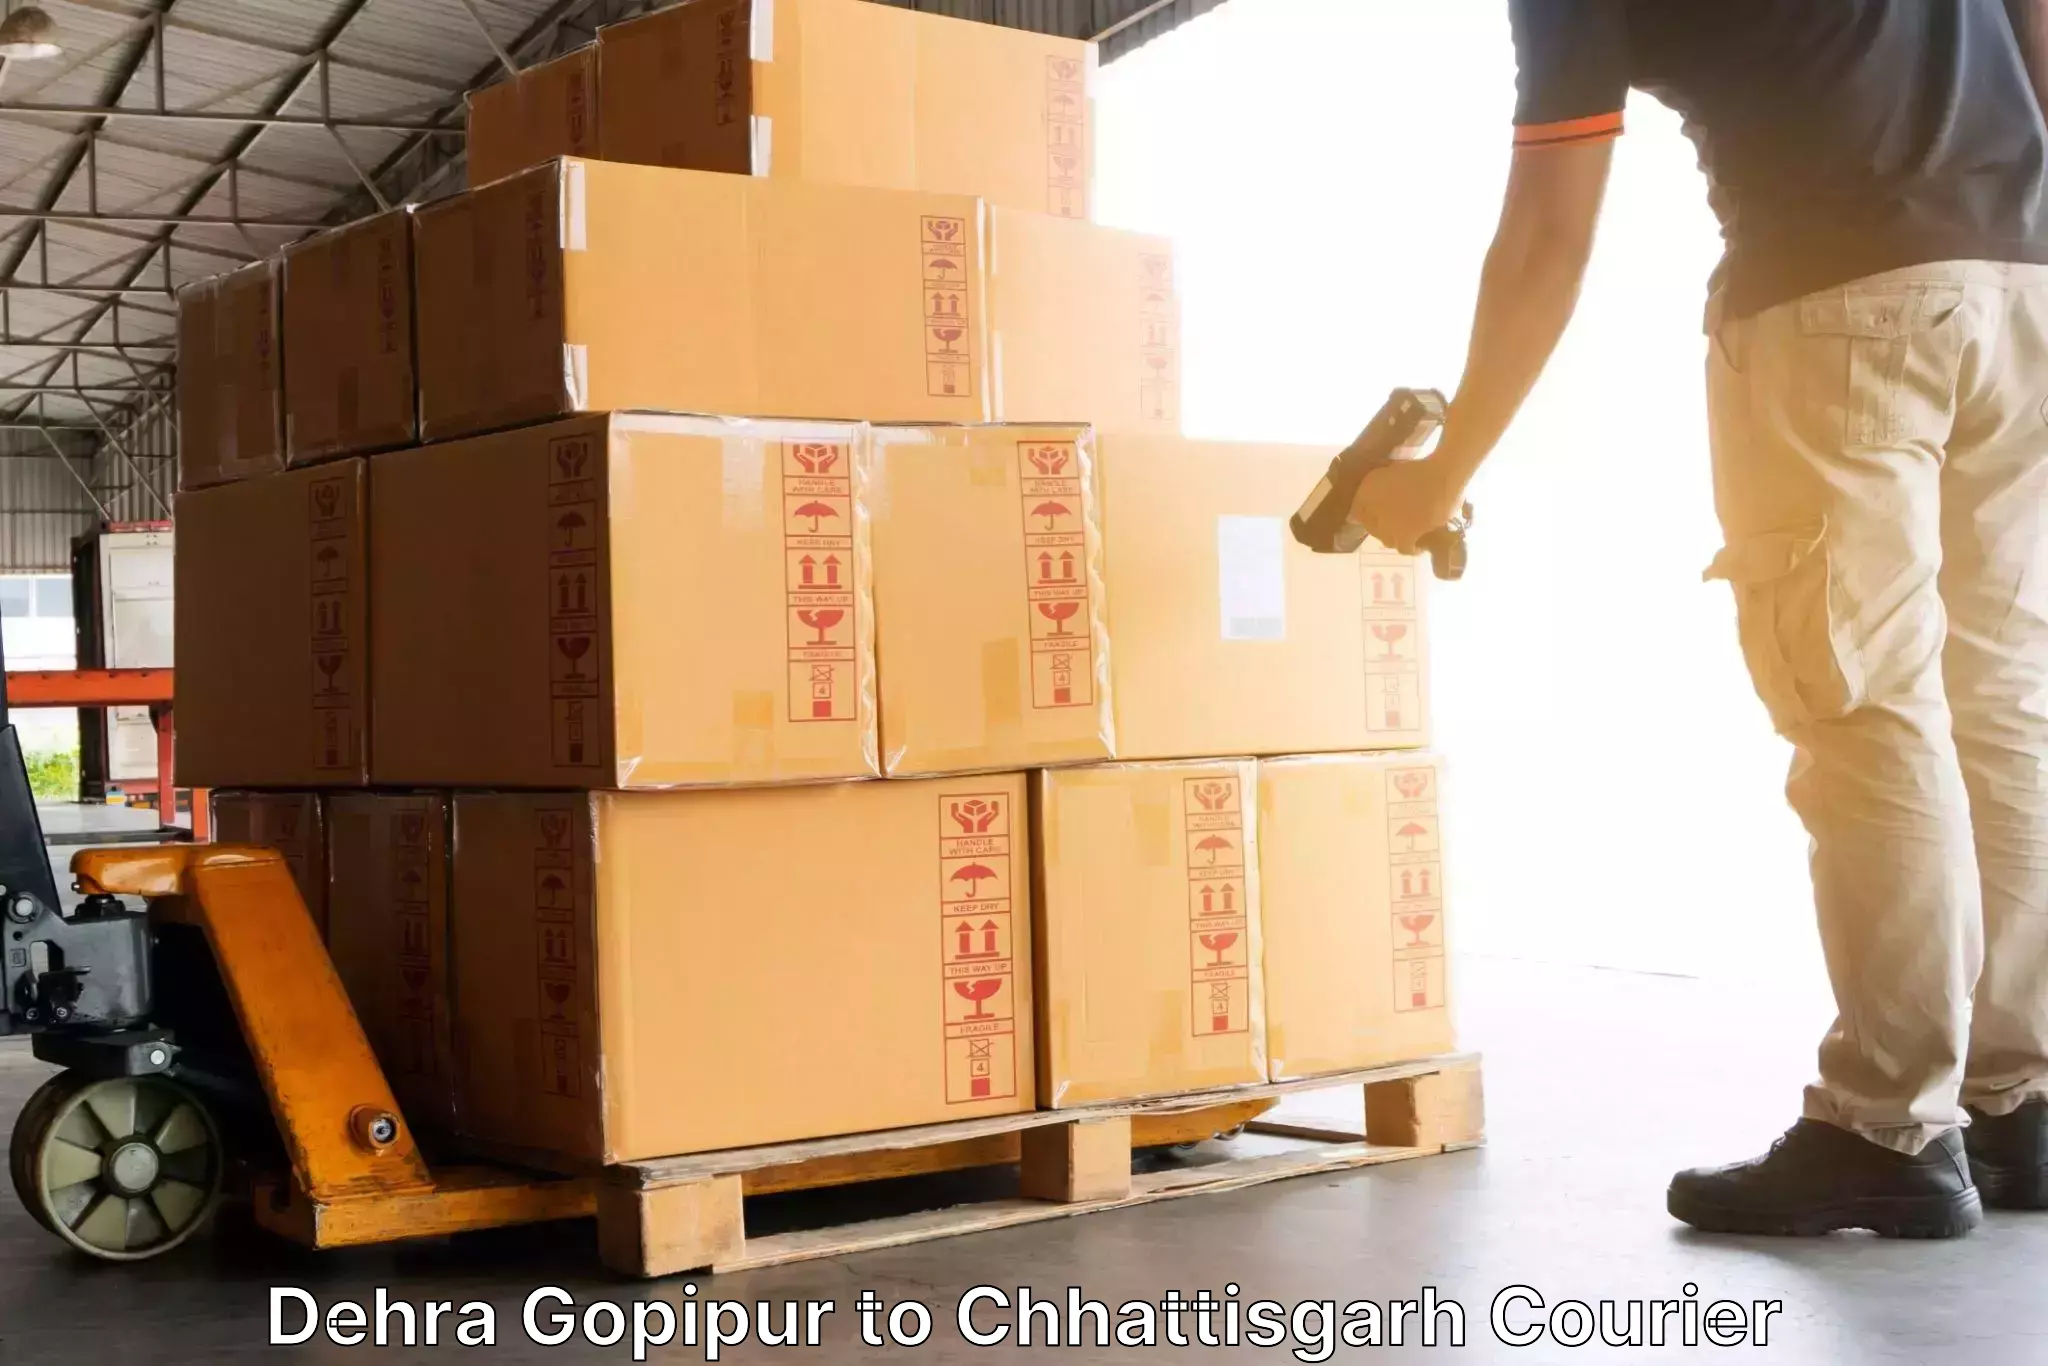 Reliable delivery network Dehra Gopipur to Chhattisgarh